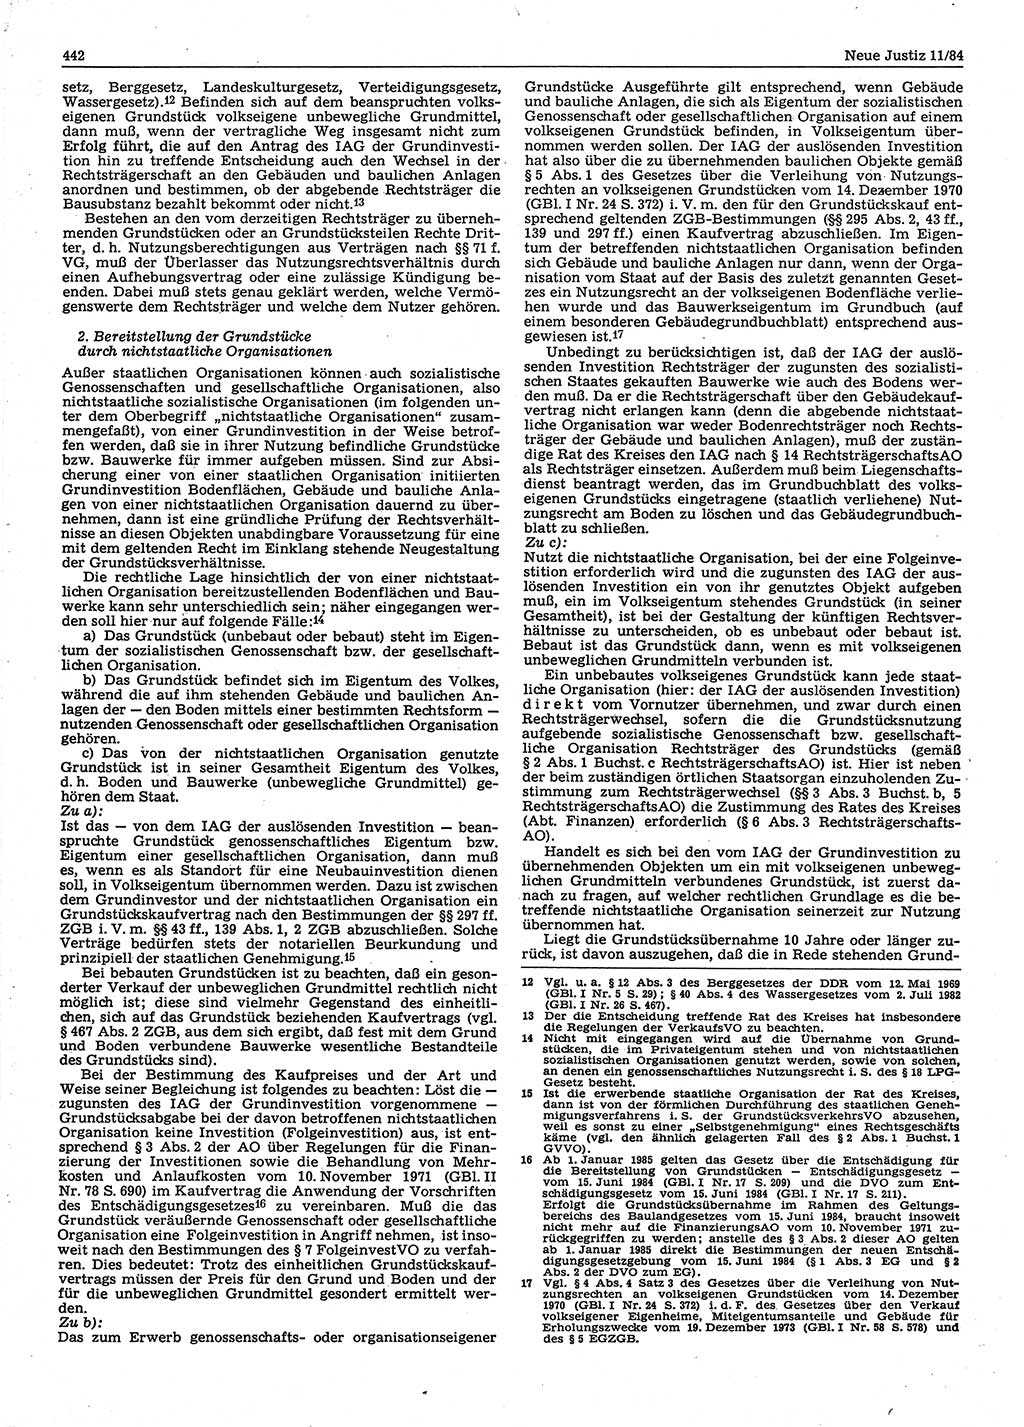 Neue Justiz (NJ), Zeitschrift für sozialistisches Recht und Gesetzlichkeit [Deutsche Demokratische Republik (DDR)], 38. Jahrgang 1984, Seite 442 (NJ DDR 1984, S. 442)